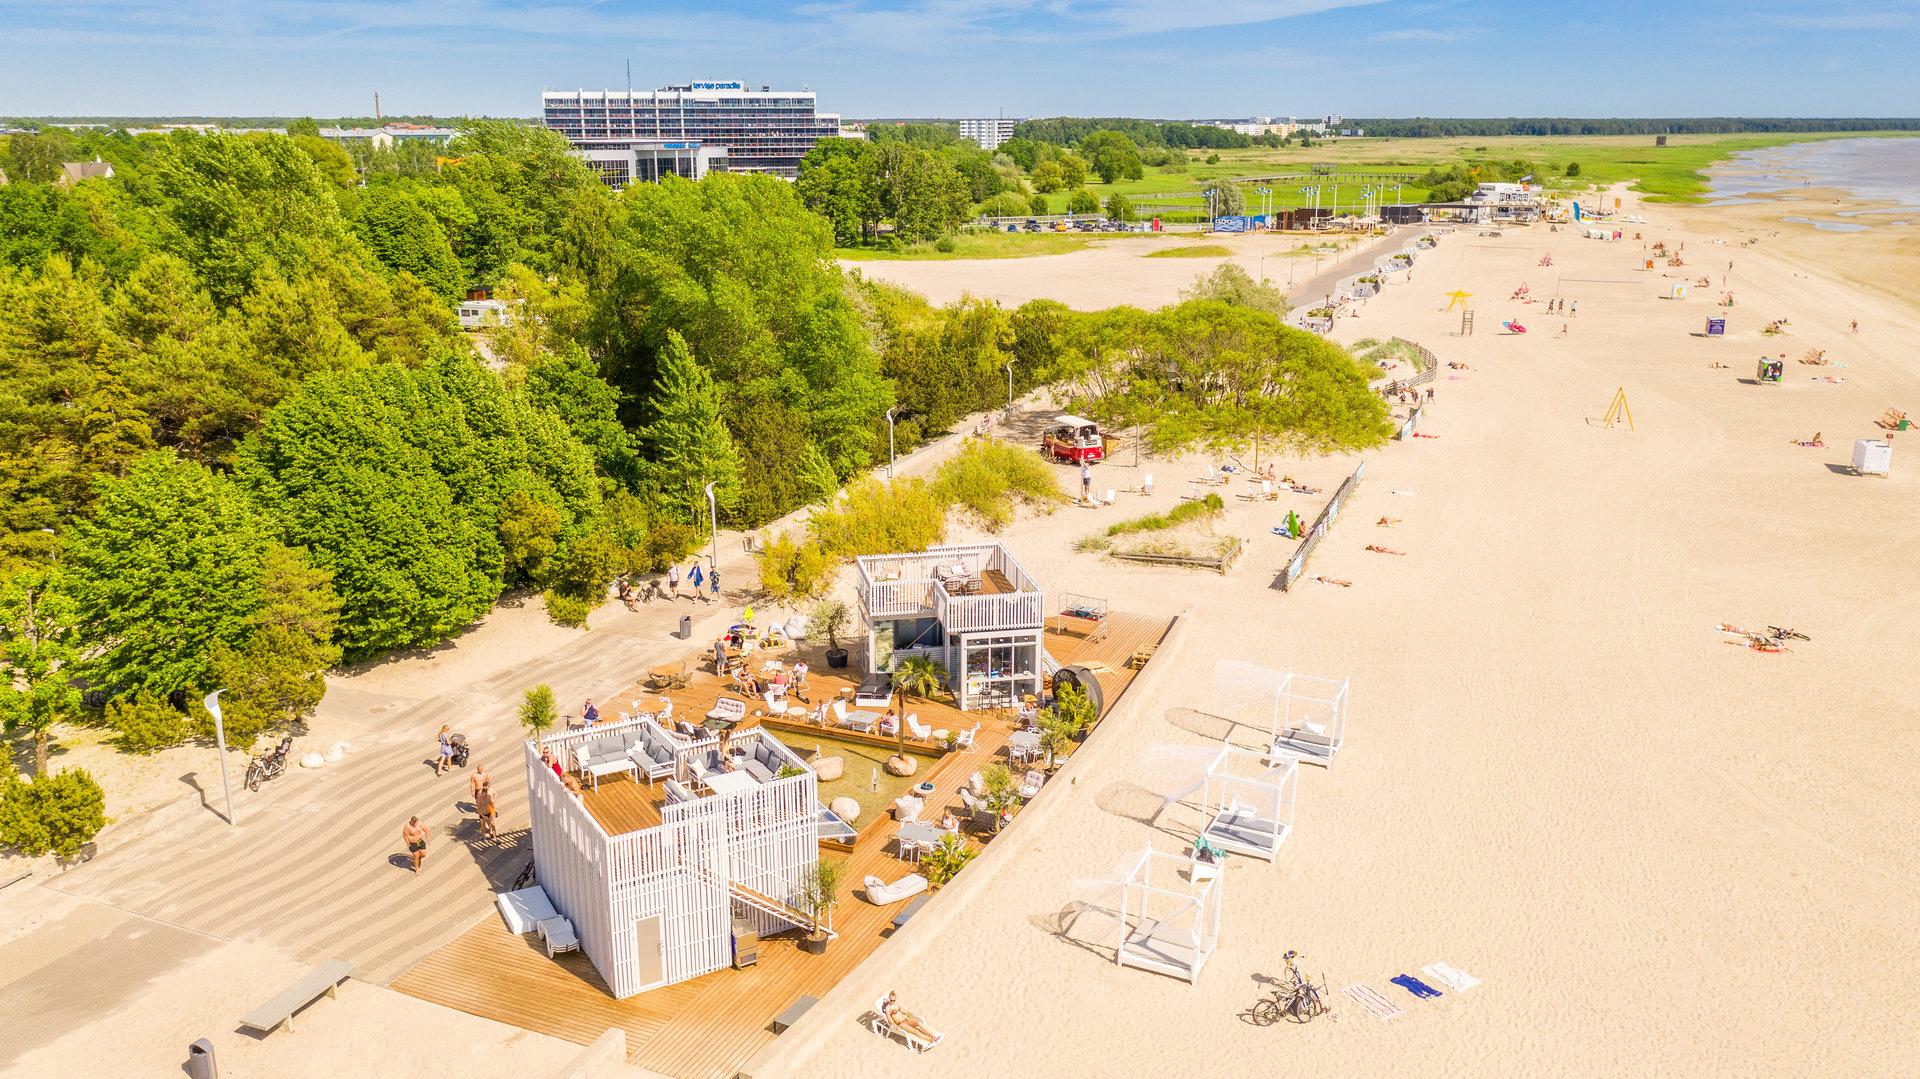 Pärnu beach promenade